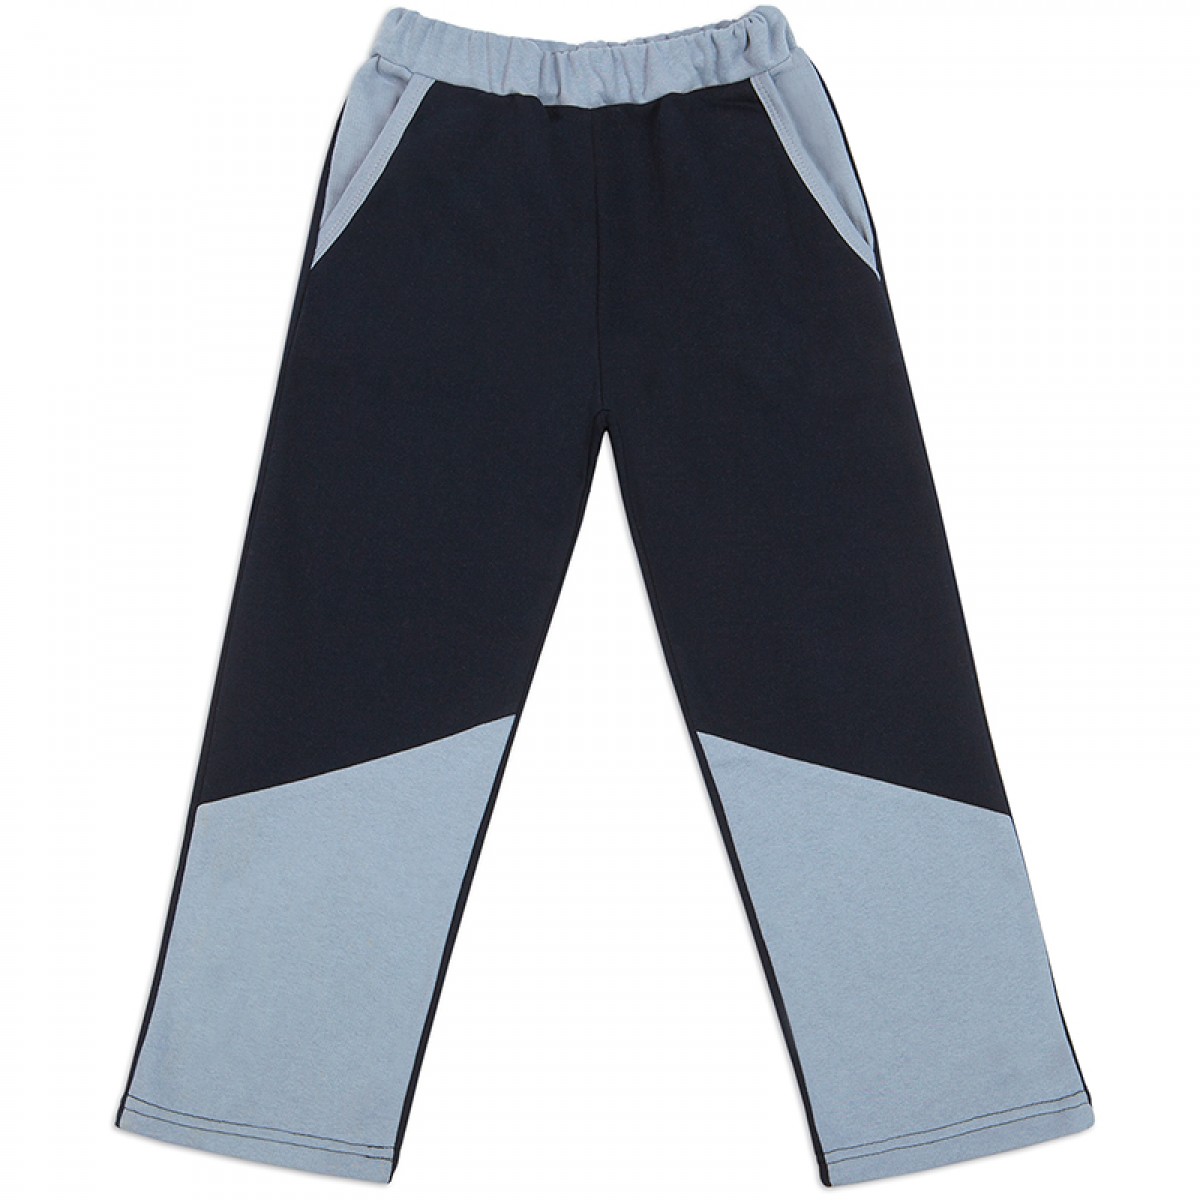 Детские штаны для мальчика, Б-0109, 100% хлопок, футер, Россия